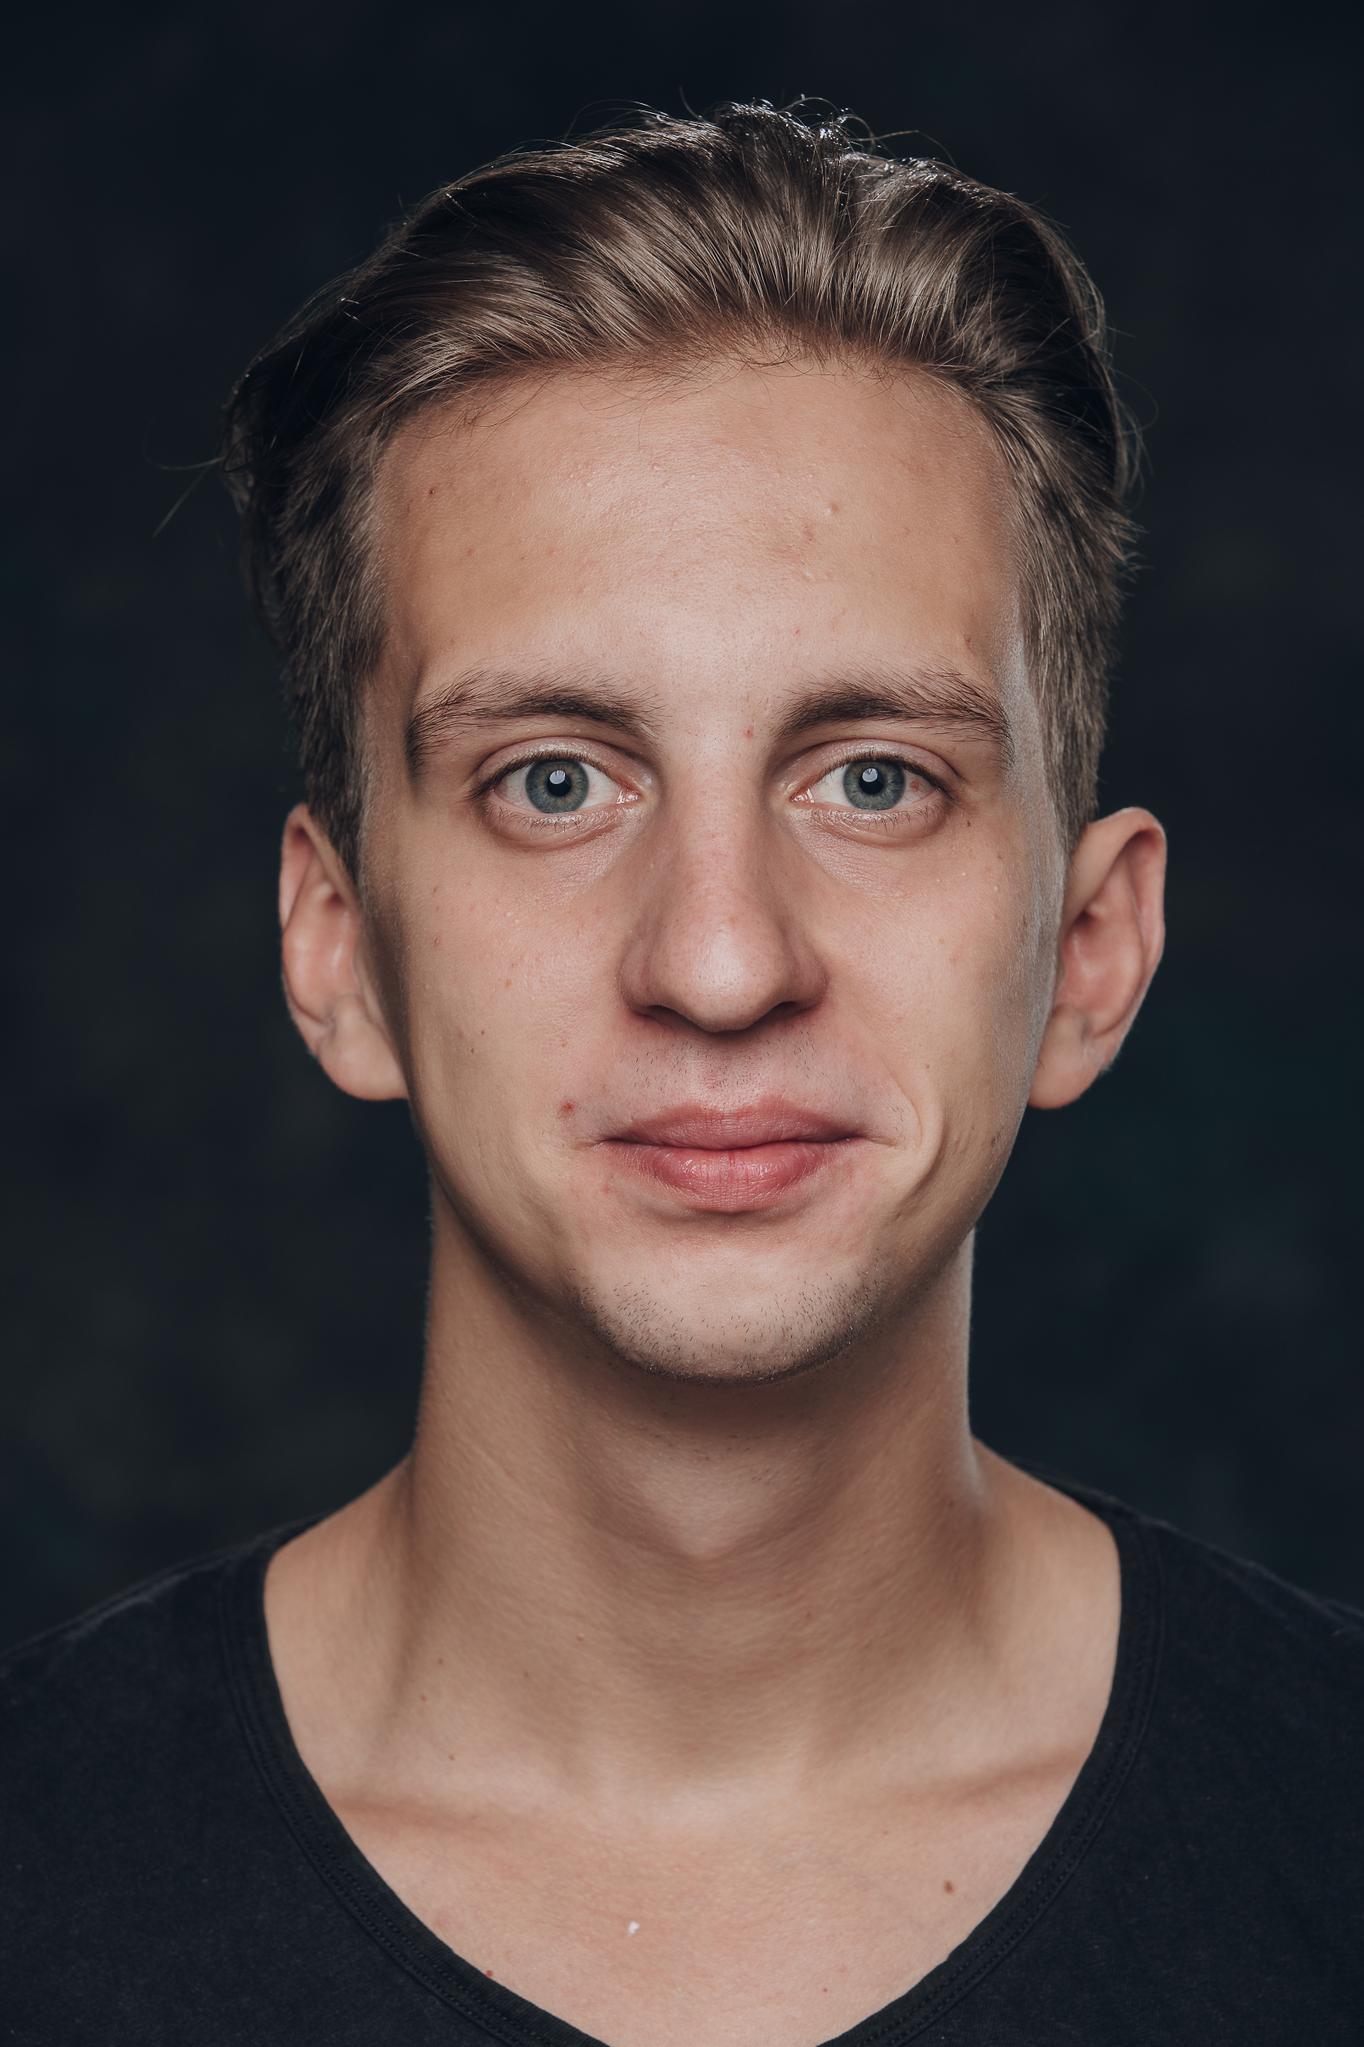 Иван Тарасов, 23, Москва. Актер театра и кино. Официальный сайт | Kinolift